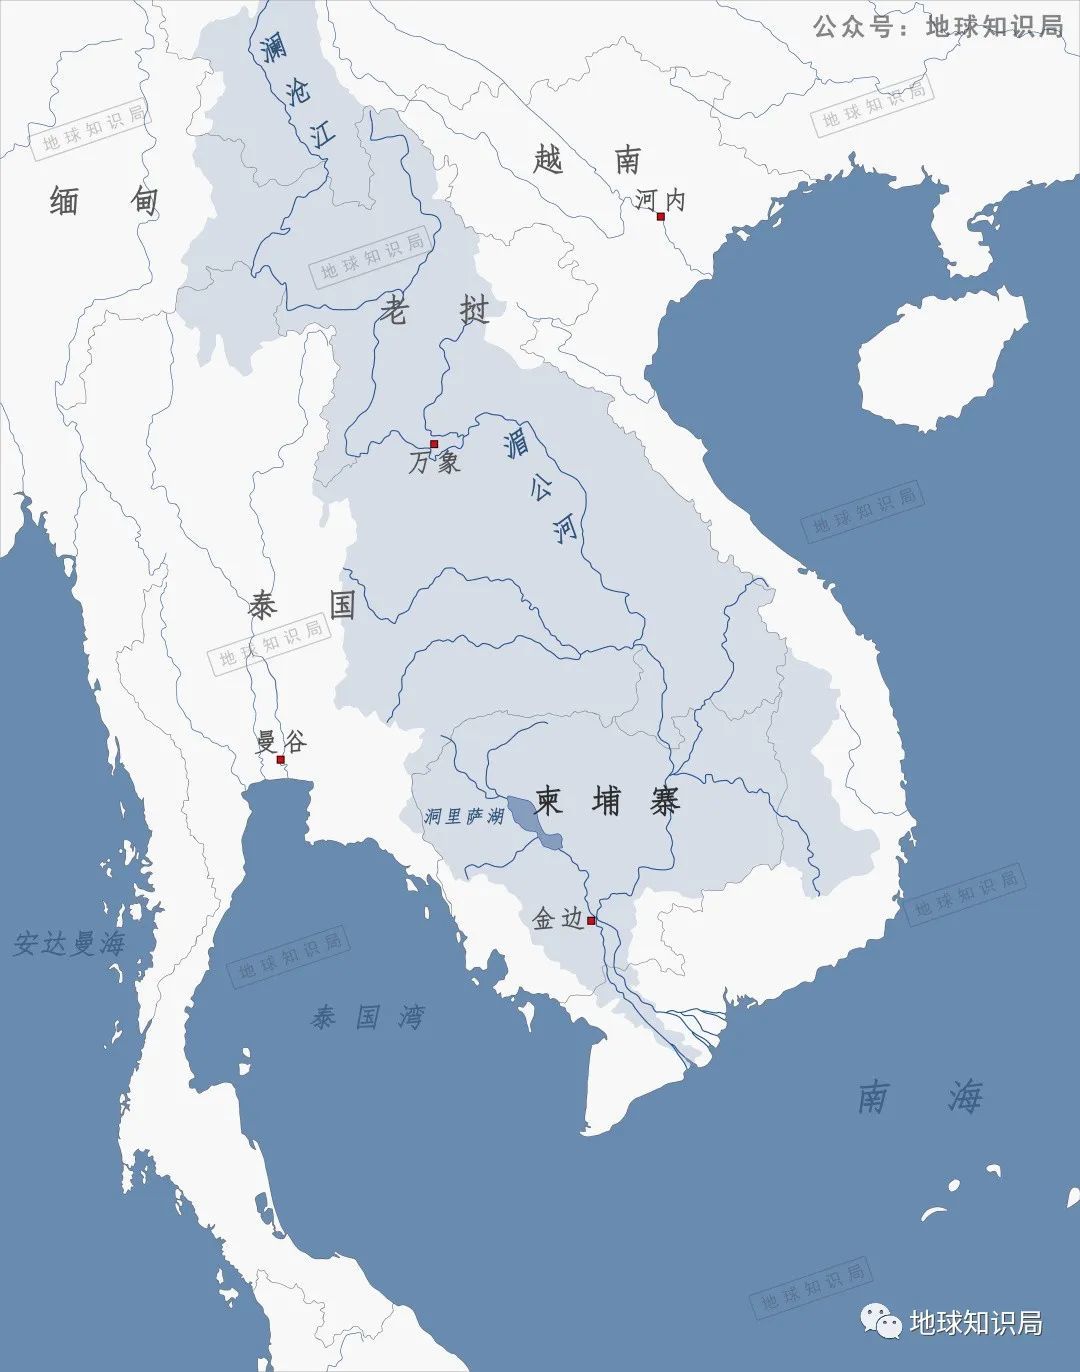 基于生态风险评估的湄公河流域生态网络识别